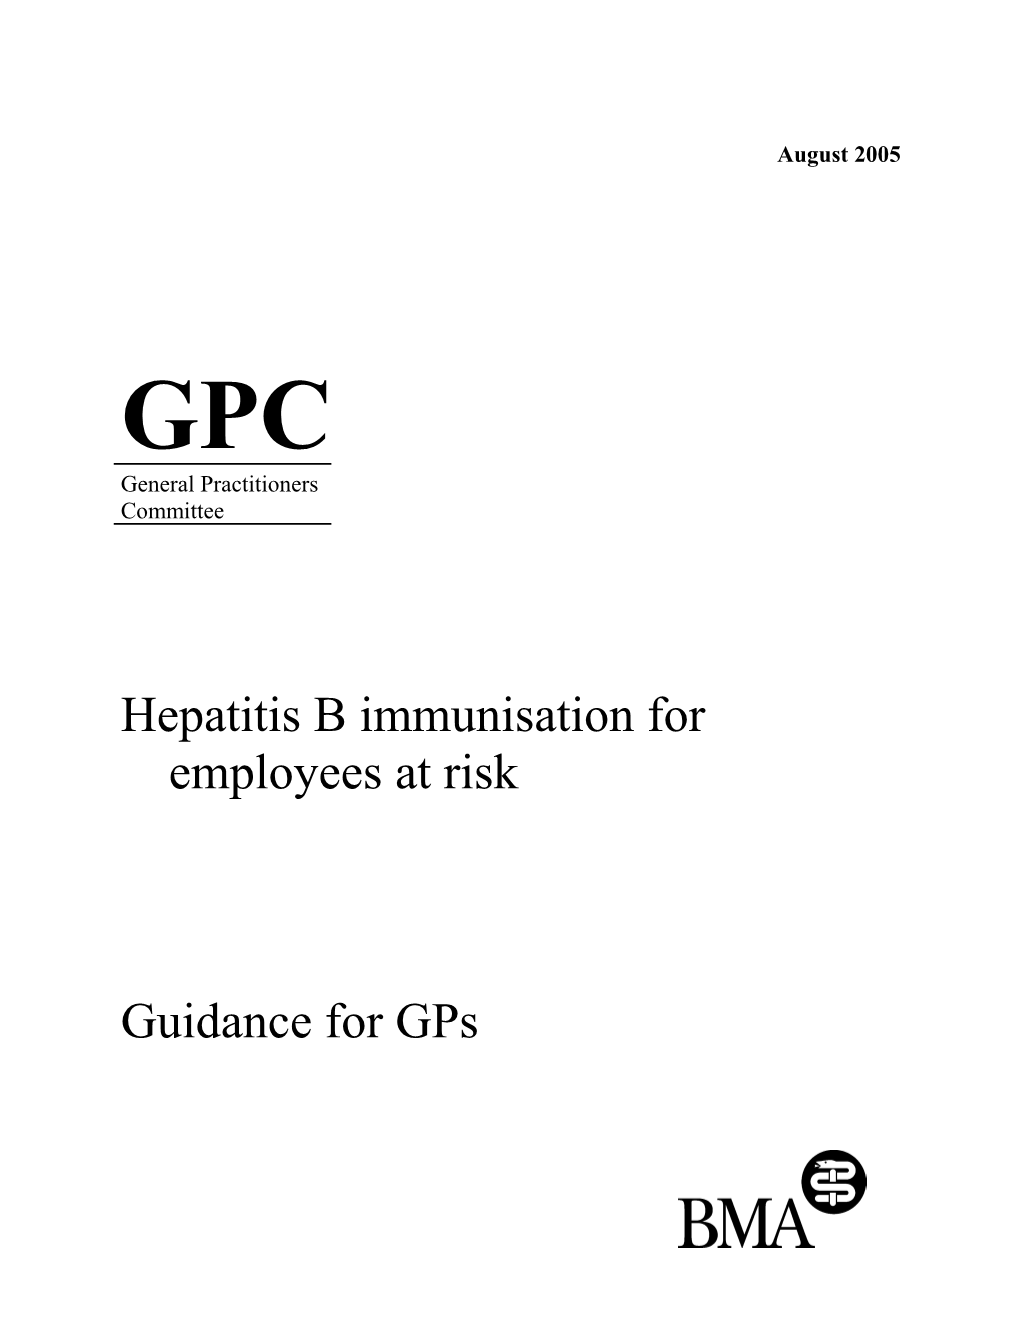 Hepatitis B Immunisation for Employees at Risk